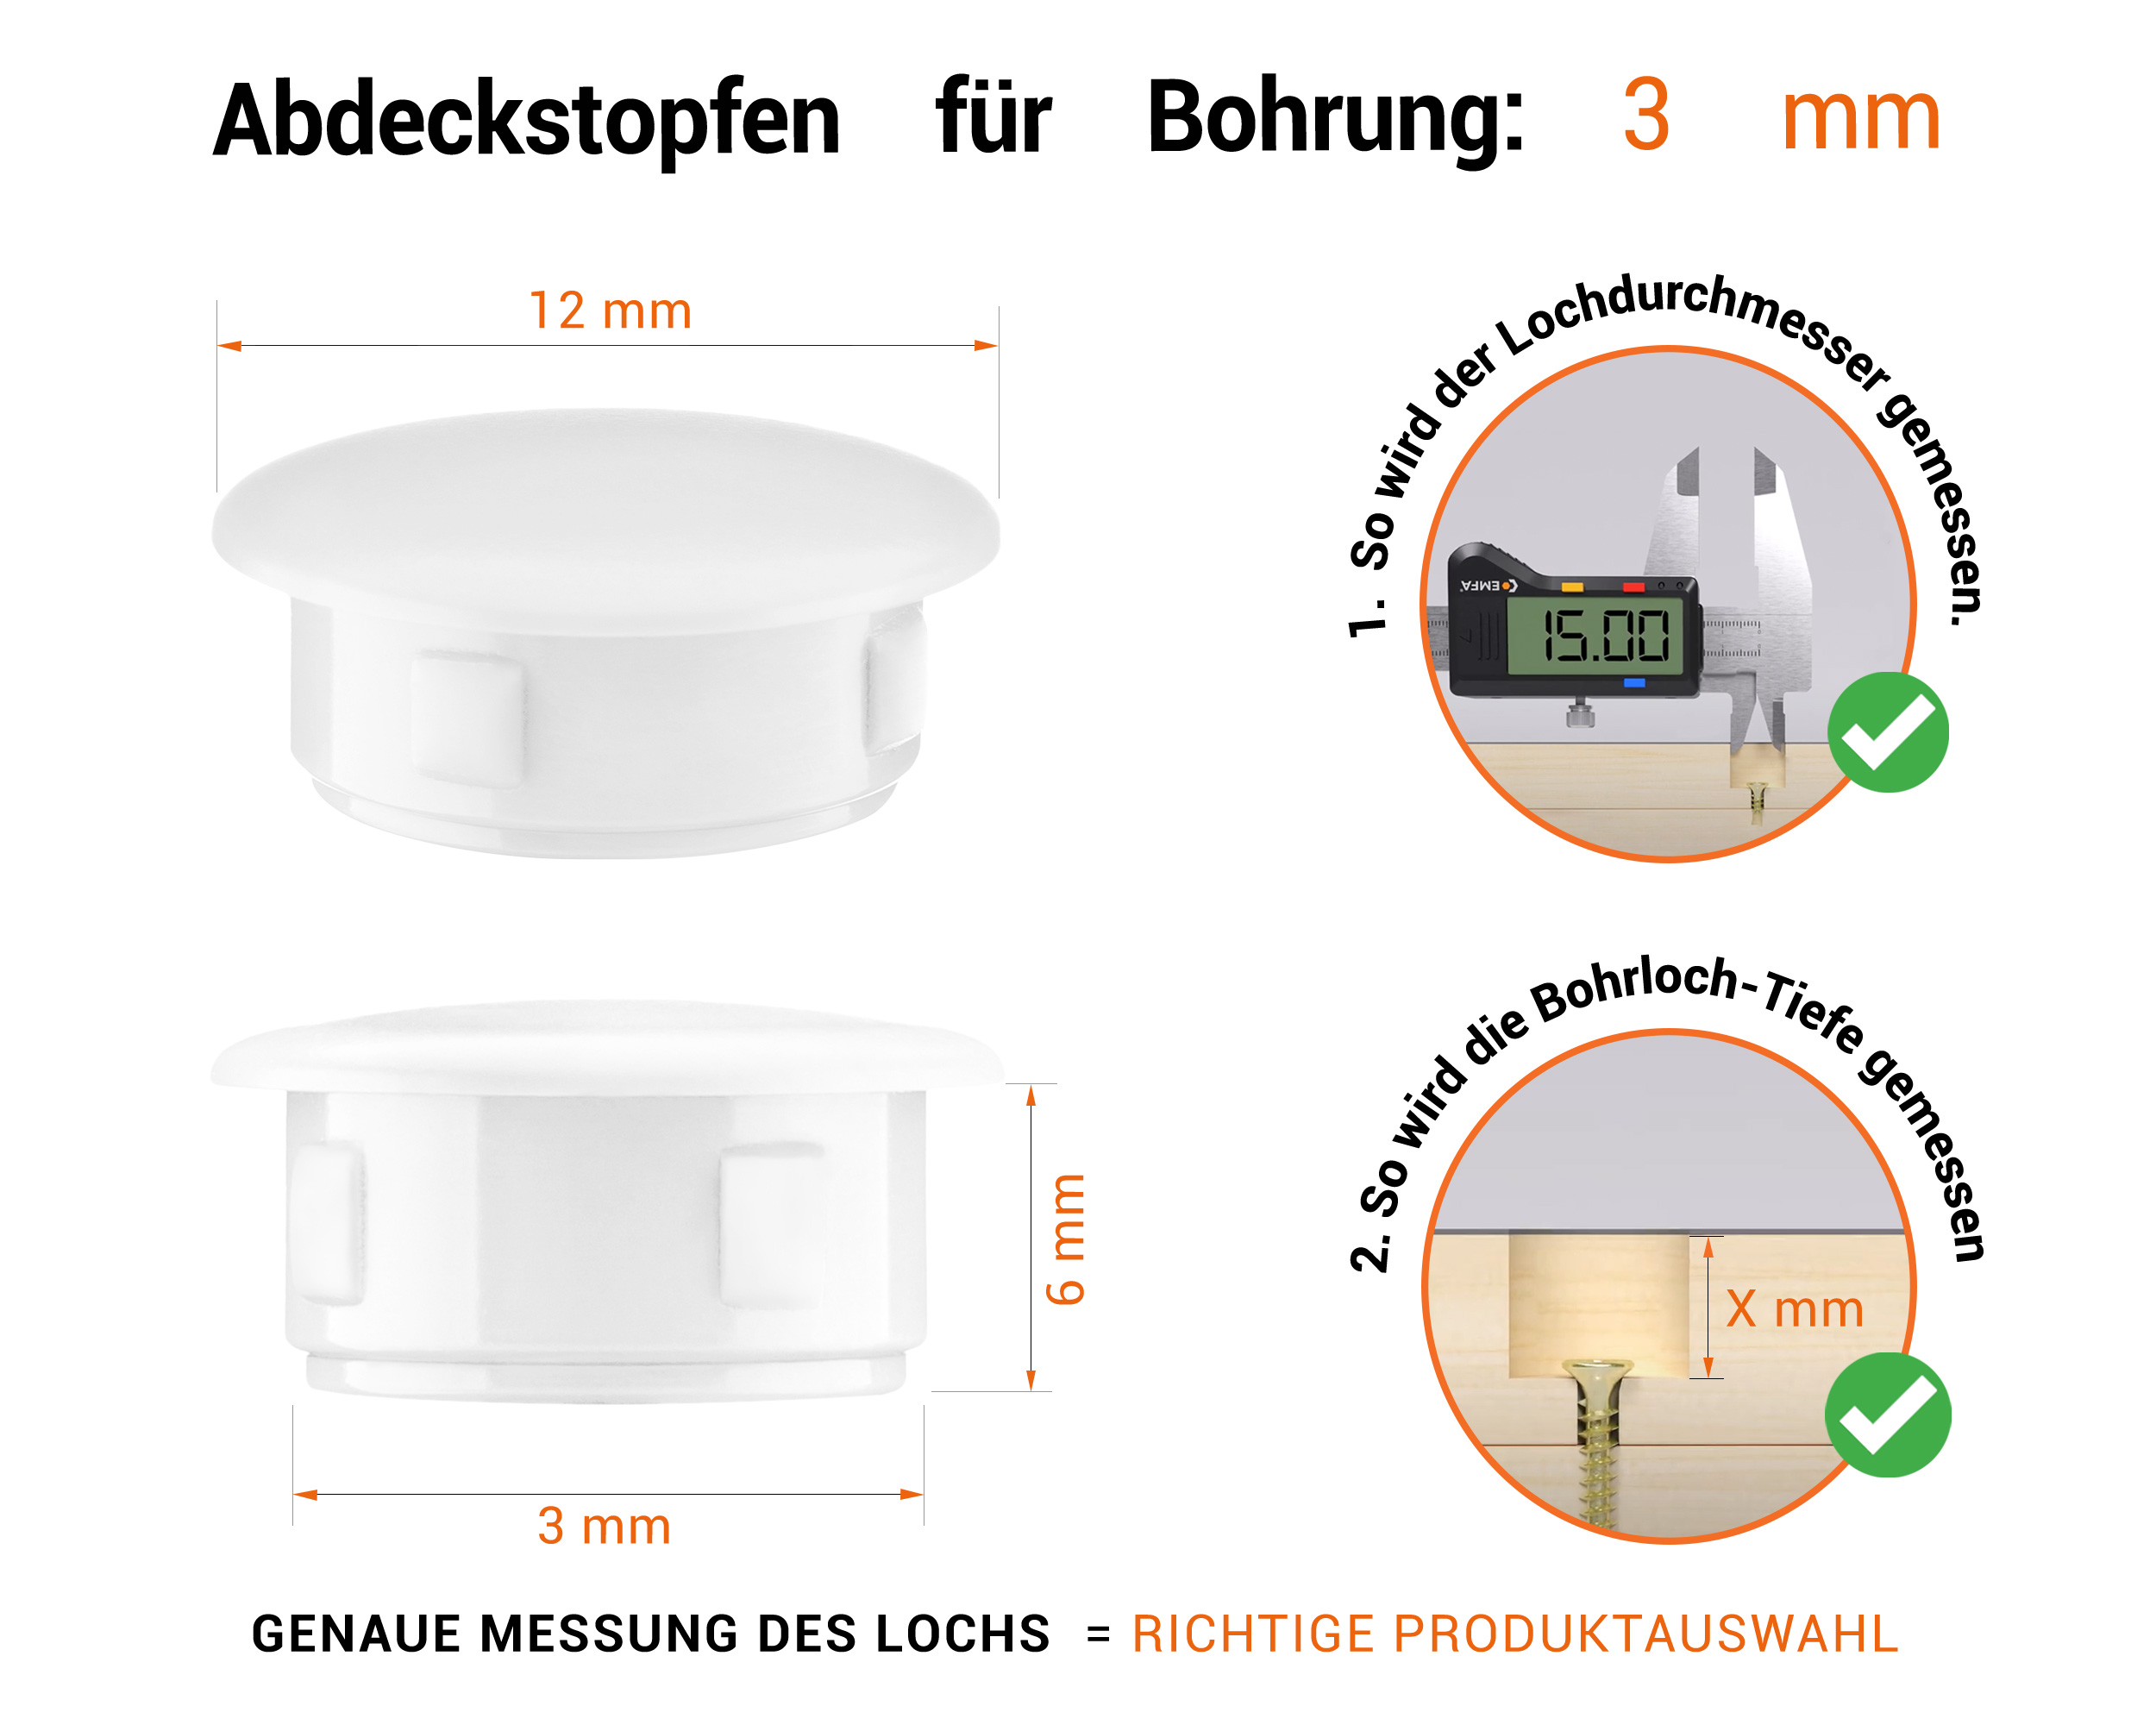 Weiße Blindstopfen aus Kunststoff für Bohrung 3 mm mm mit technischen Abmessungen und Anleitung für korrekte Messung